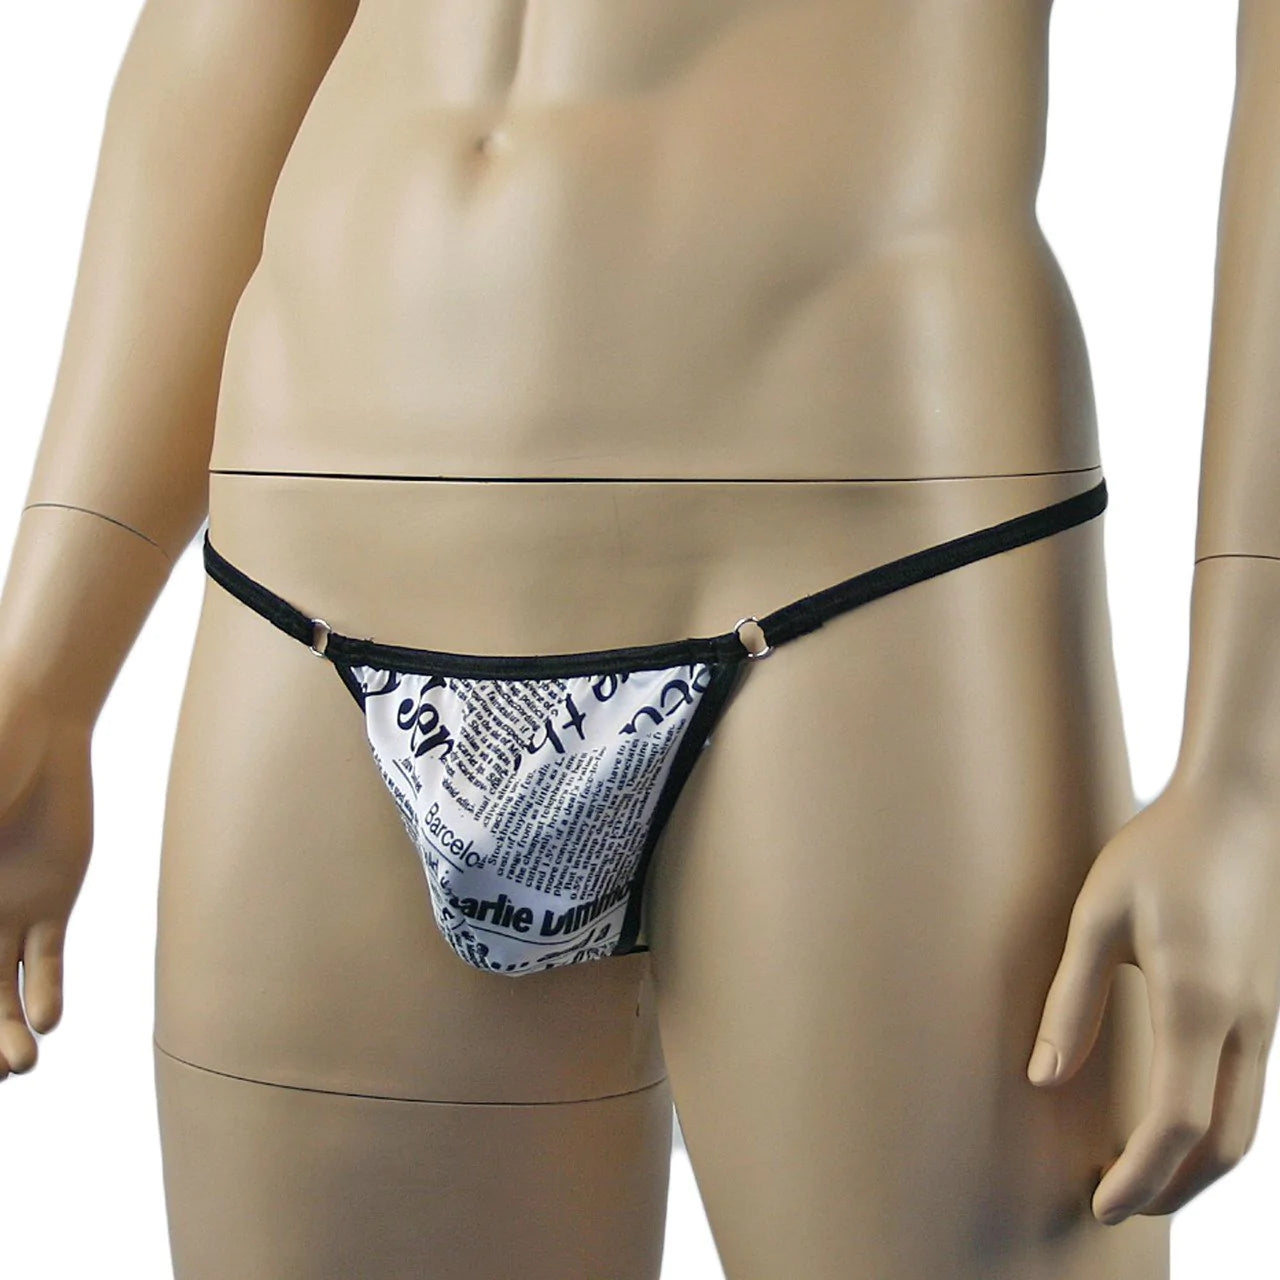 SALE - Mens Newspaper Print Pouch G string, Male G string Underwear